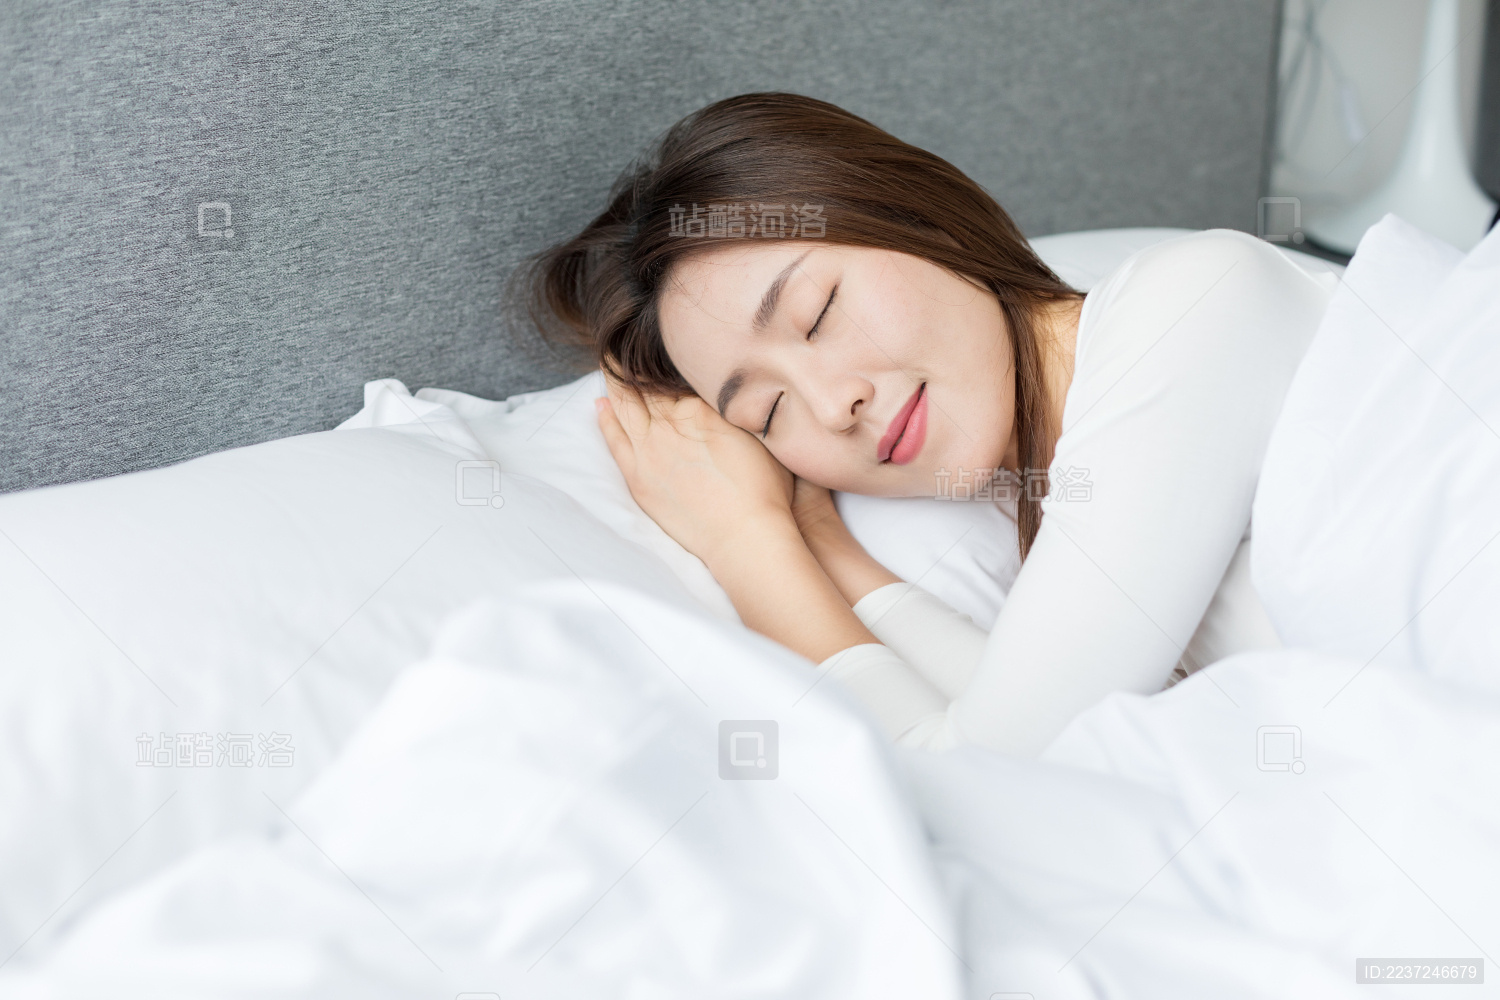 睡觉的女人素材,女生侧身睡觉唯美图片 - 伤感说说吧